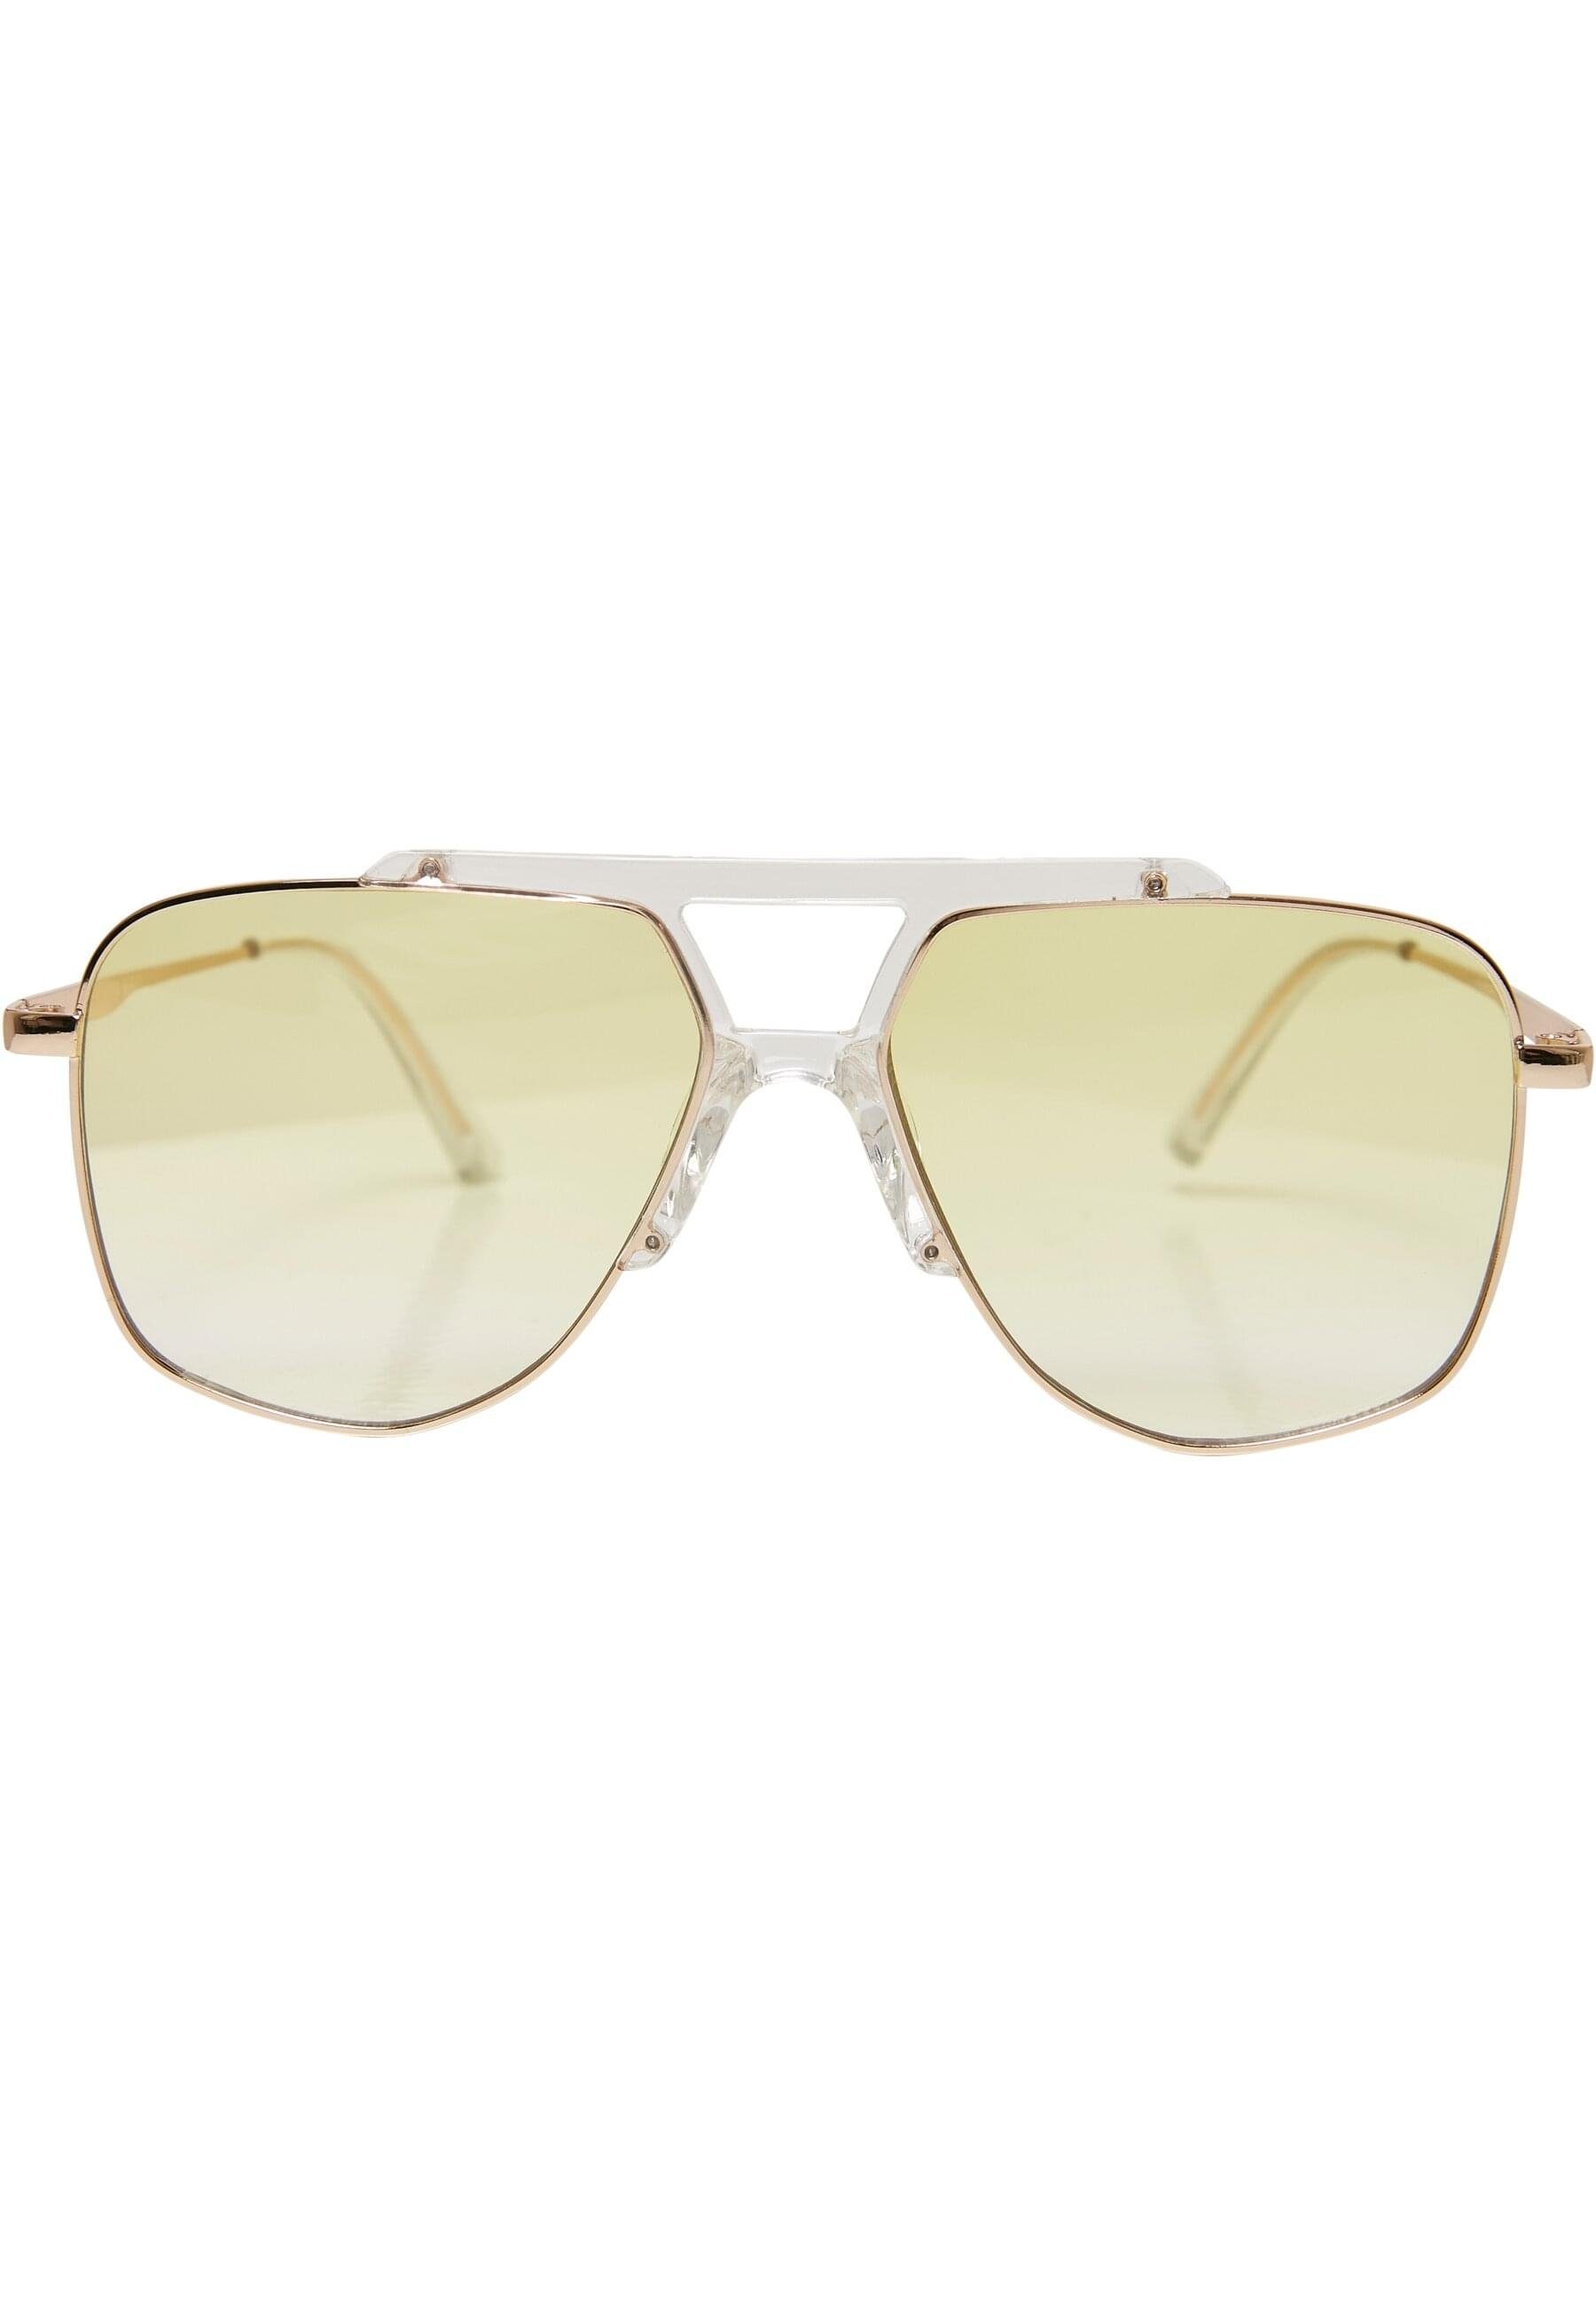 URBAN CLASSICS Sonnenbrille Unisex Sunglasses Saint transparent/gold Tropez